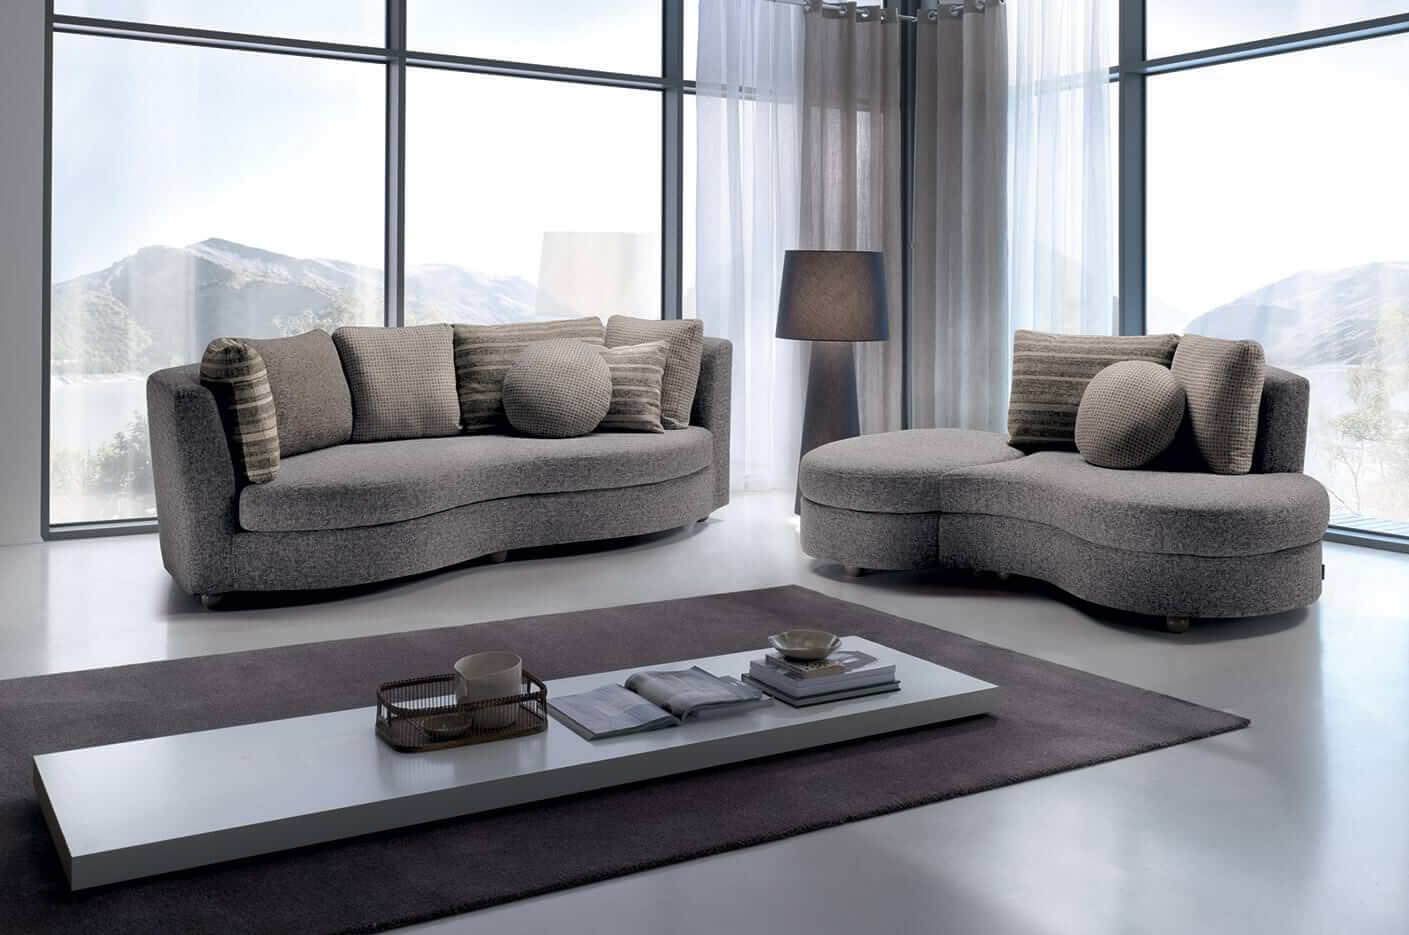 A Bolero kanapé szokatlan, formabontó kialakításával hívja fel magára a figyelmet.